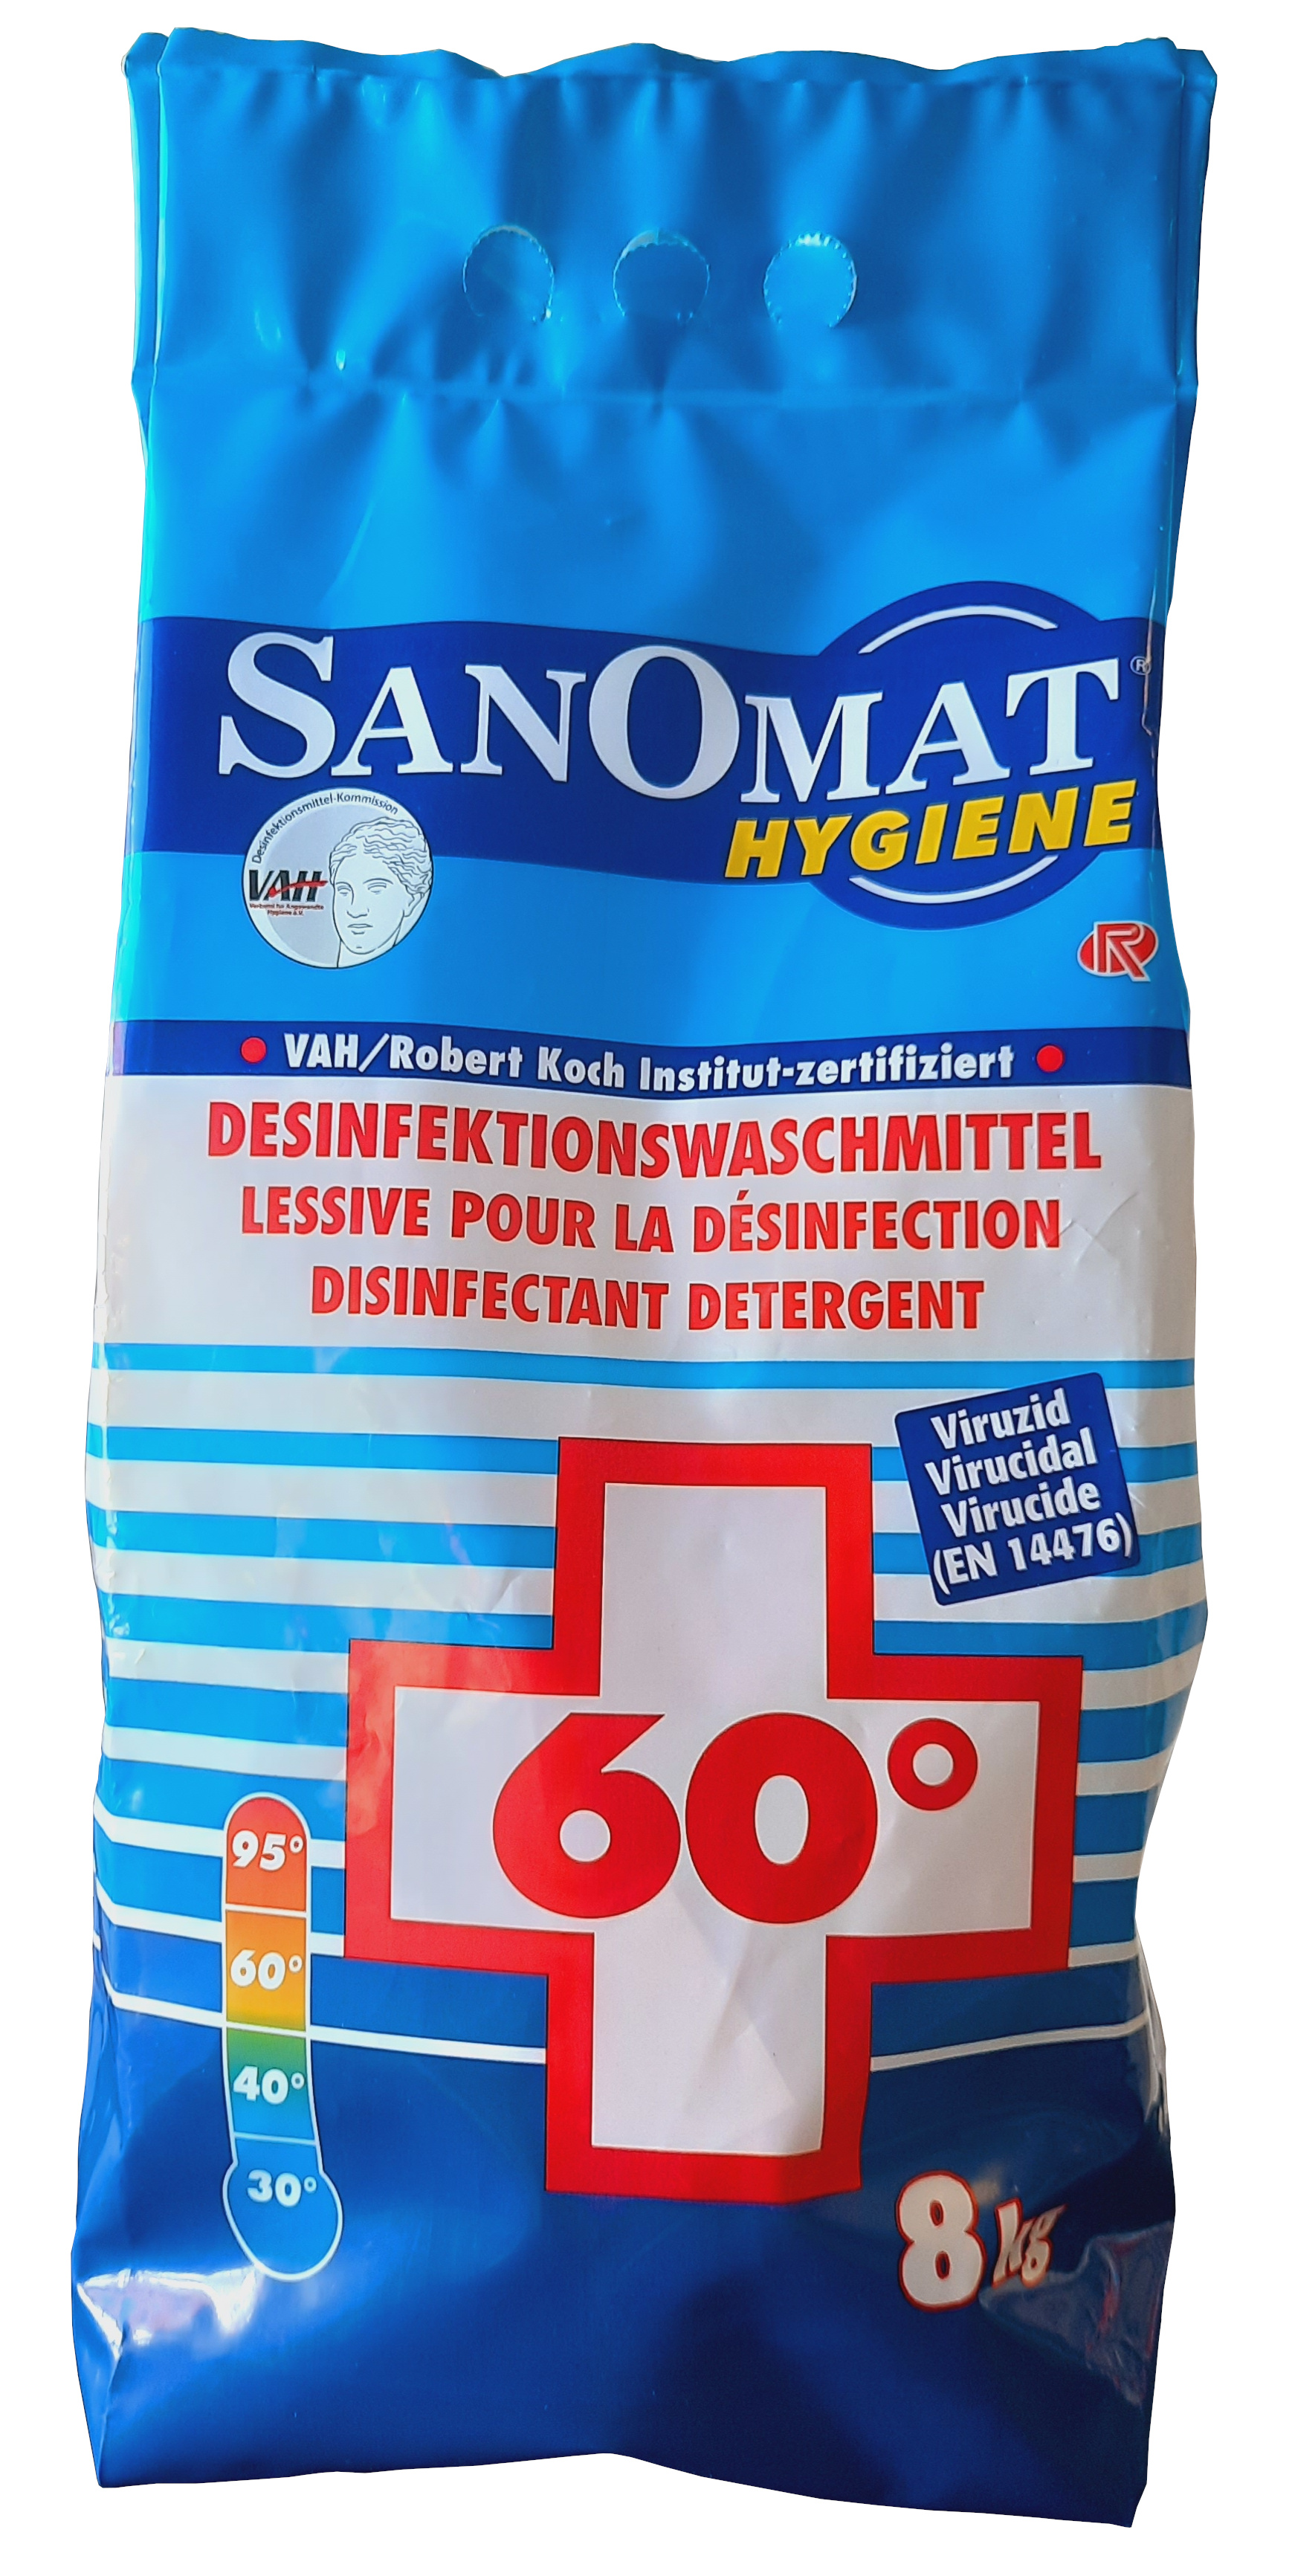 Rösch Sanomat Desinfektionswaschmittel